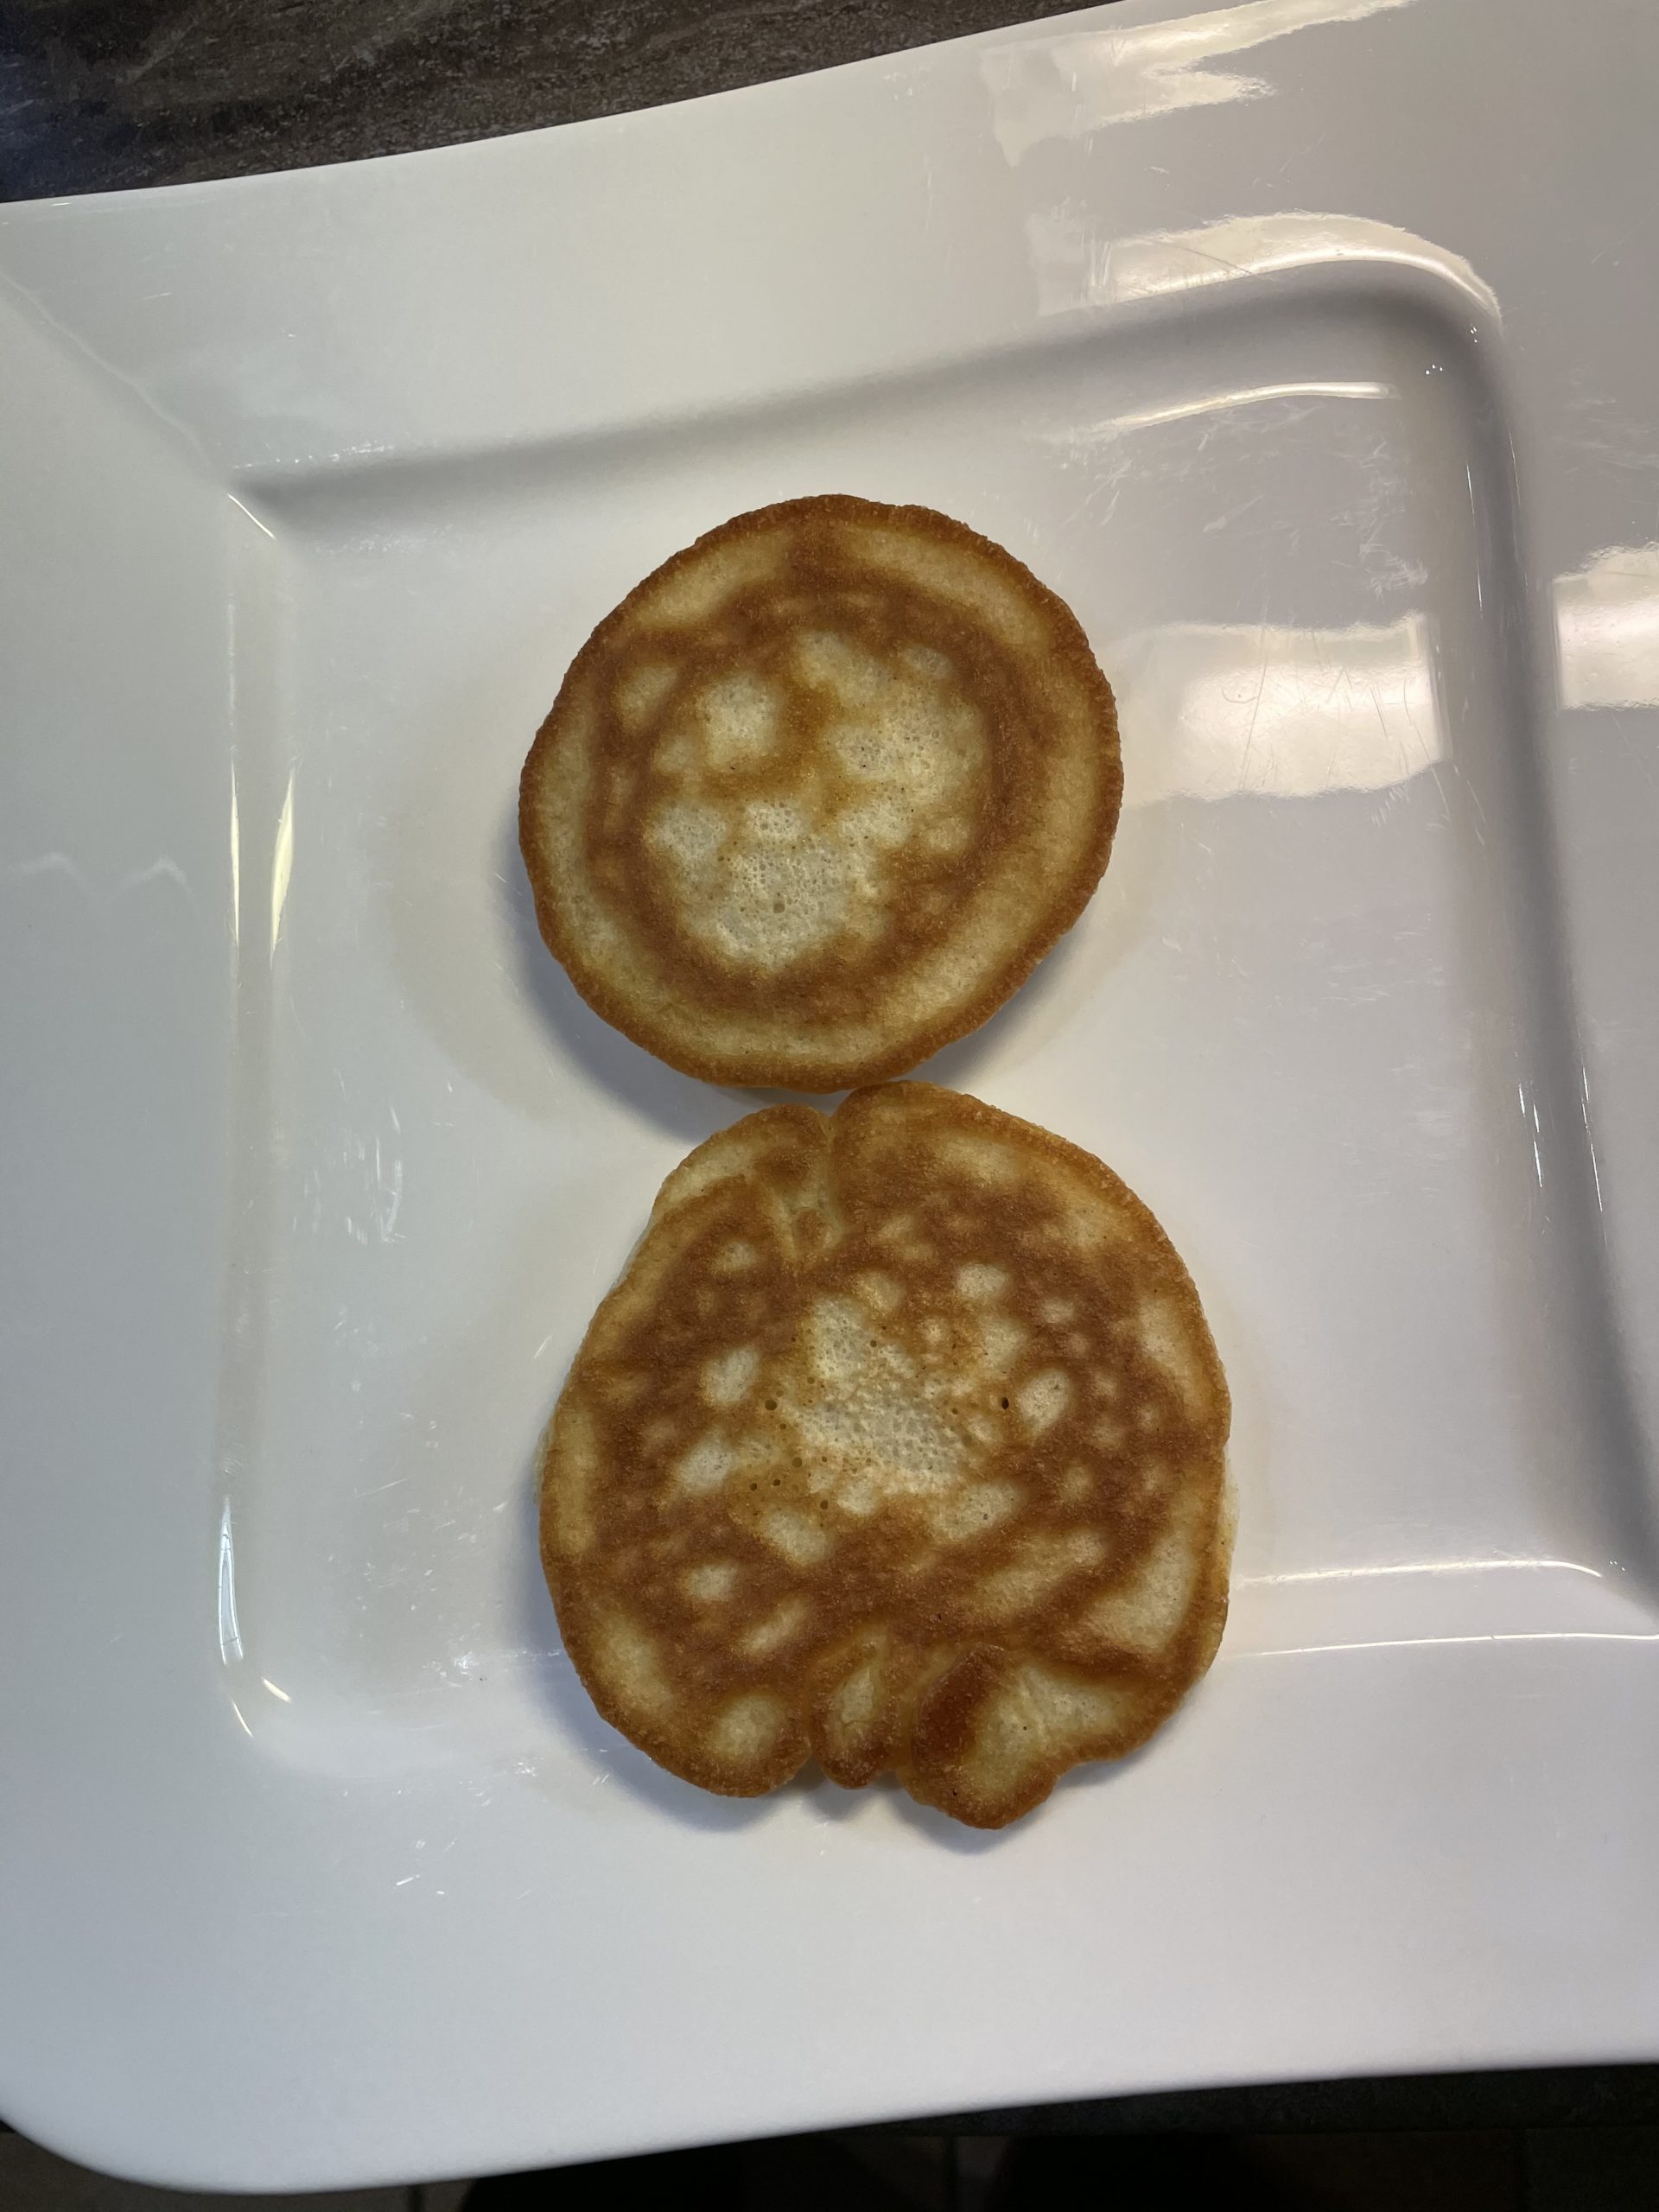 Bild zum Schritt 12 für das Bastel- und DIY-Abenteuer für Kinder: 'Dann nehmt die fertigen Pancakes aus der Pfanne.  ...'